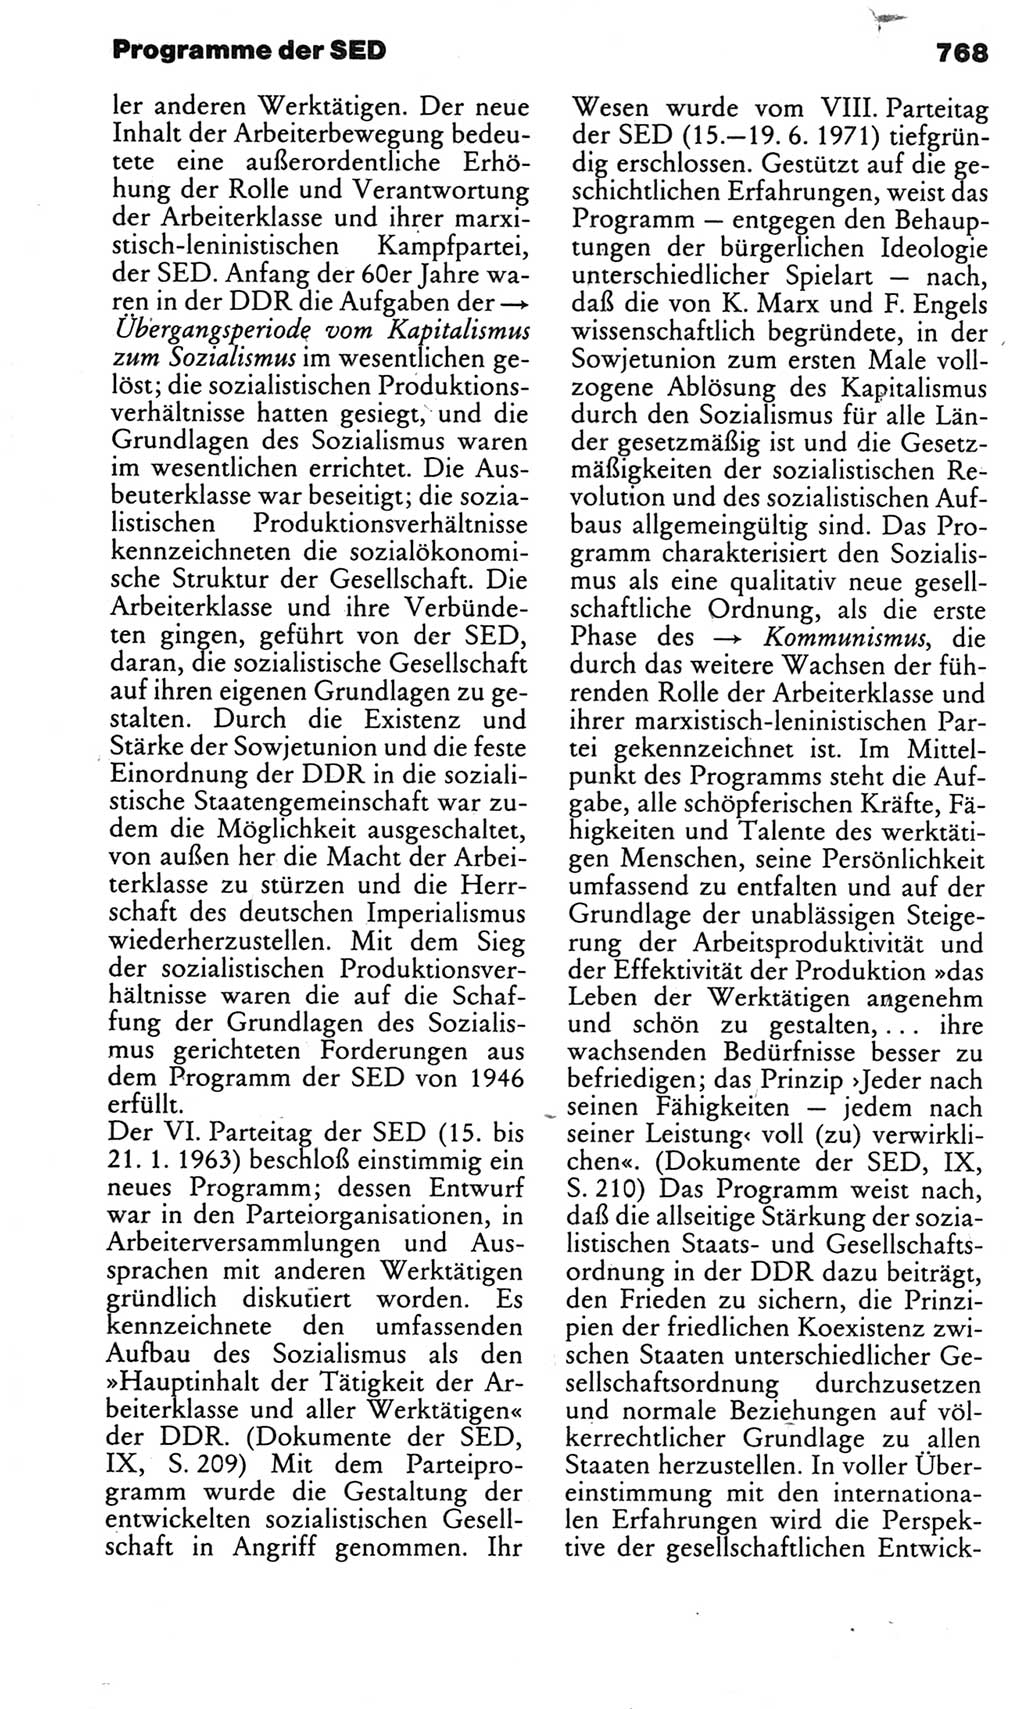 Kleines politisches Wörterbuch [Deutsche Demokratische Republik (DDR)] 1983, Seite 768 (Kl. pol. Wb. DDR 1983, S. 768)